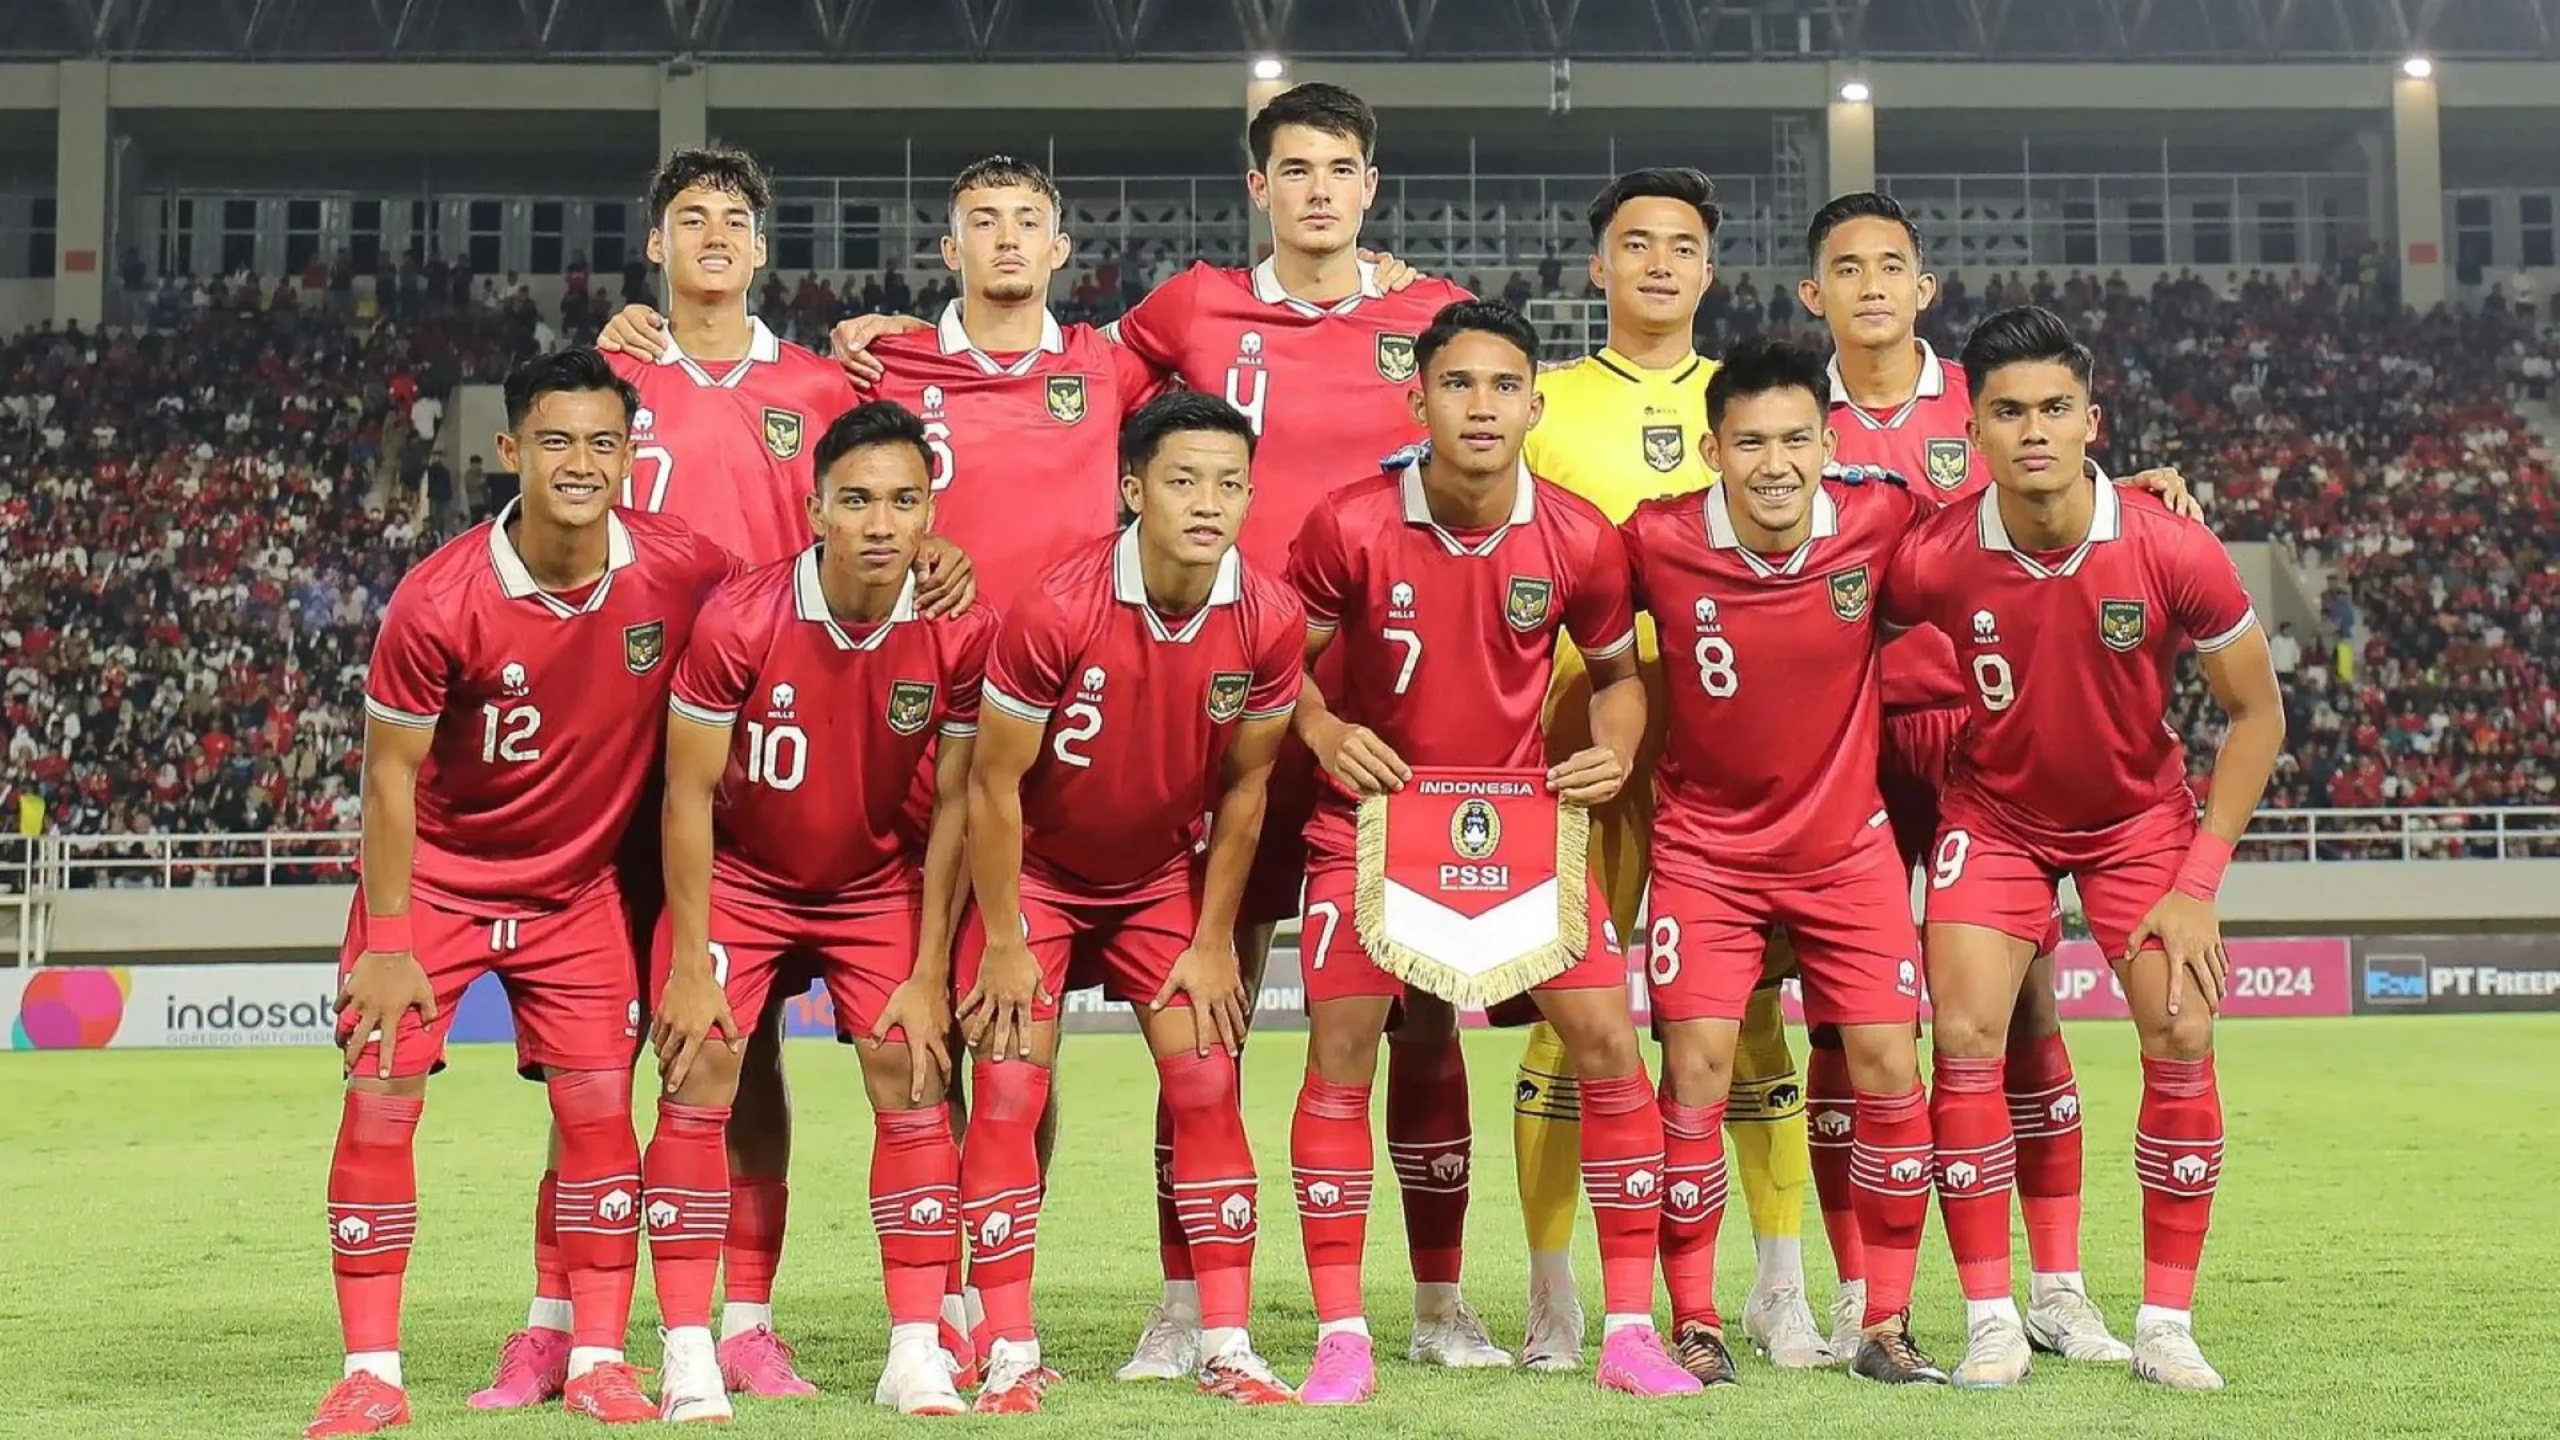 Jadwal Lengkap Pertandingan Timnas Indonesia Sepanjang Tahun 2024, Mulai dari Piala Asia hingga Piala AFF